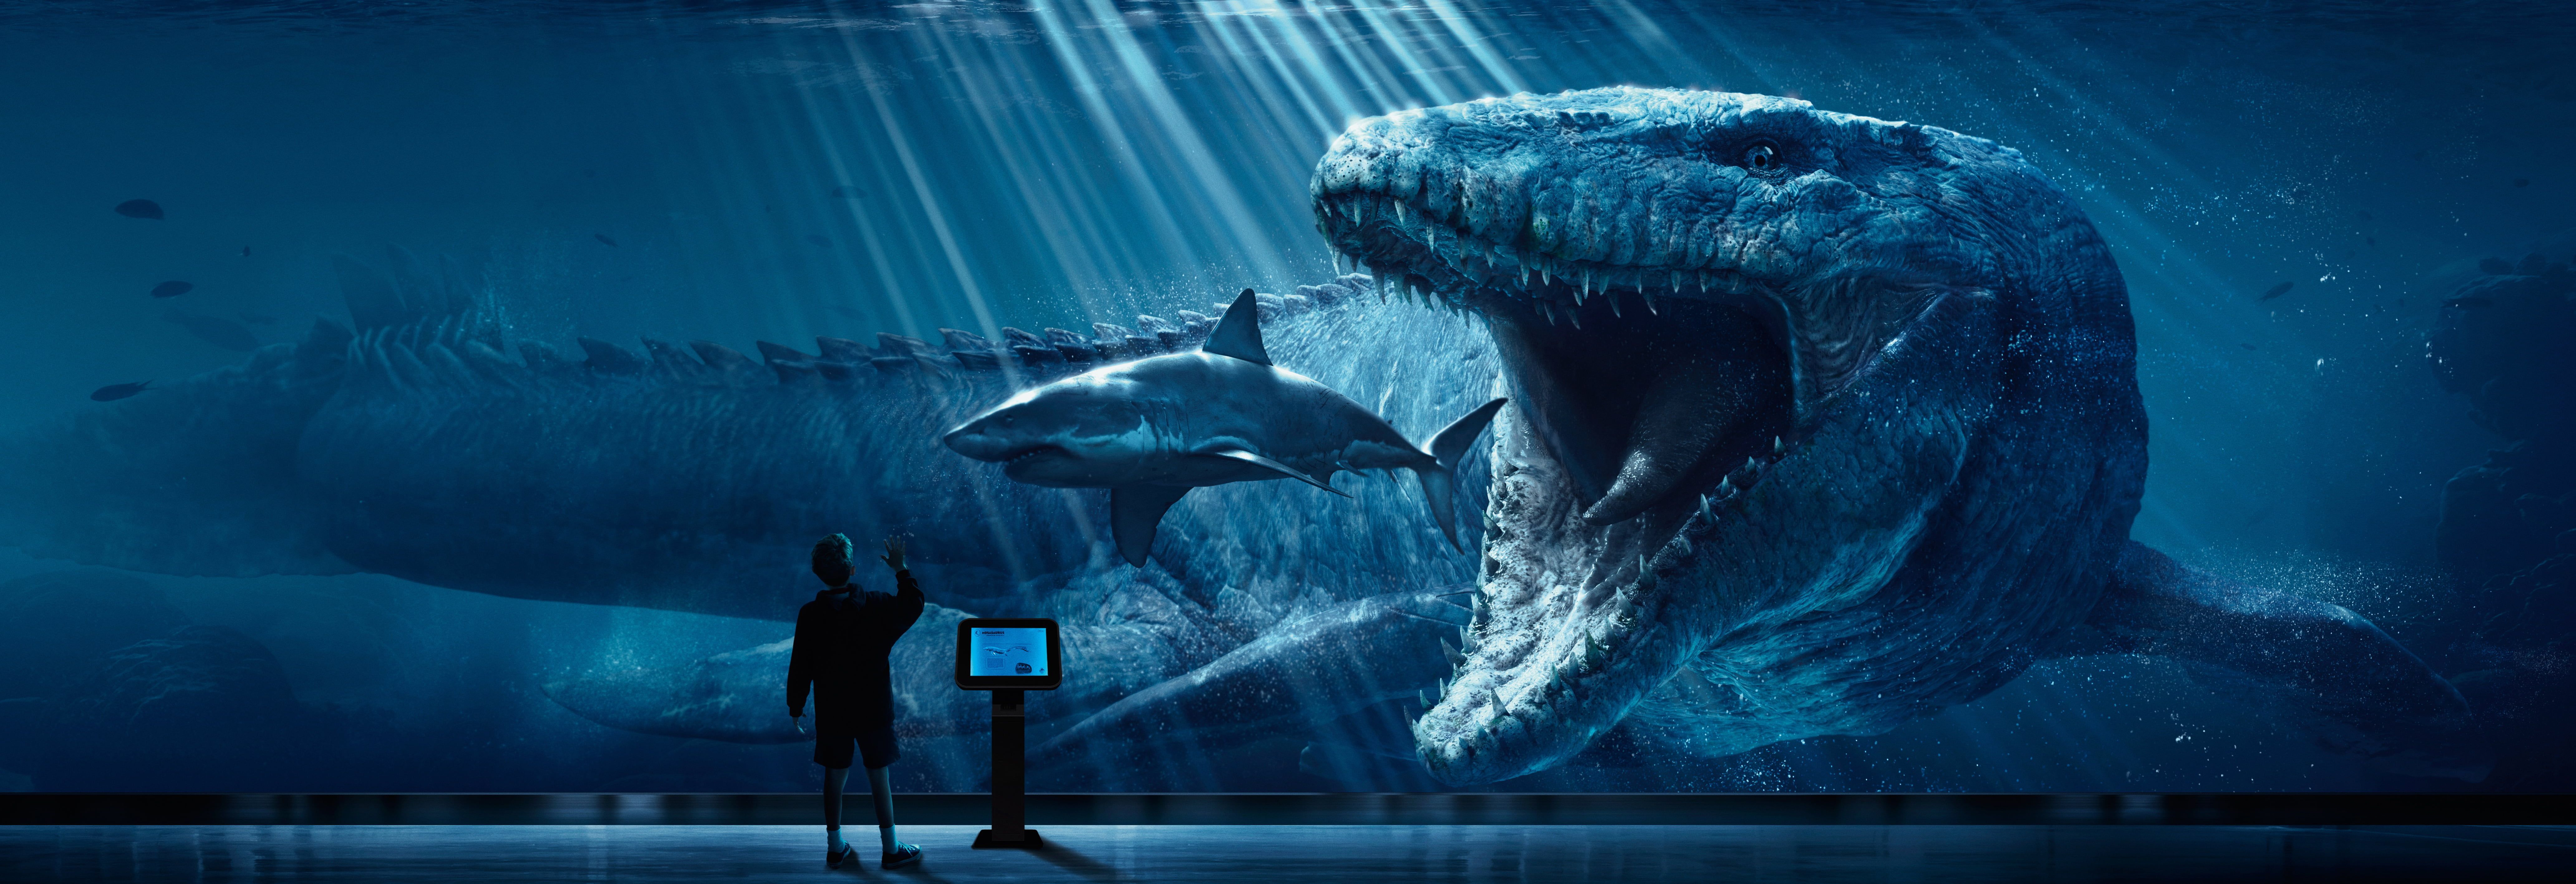 Megalodon wallpaper digital art Jurassic World #shark #dinosaurs